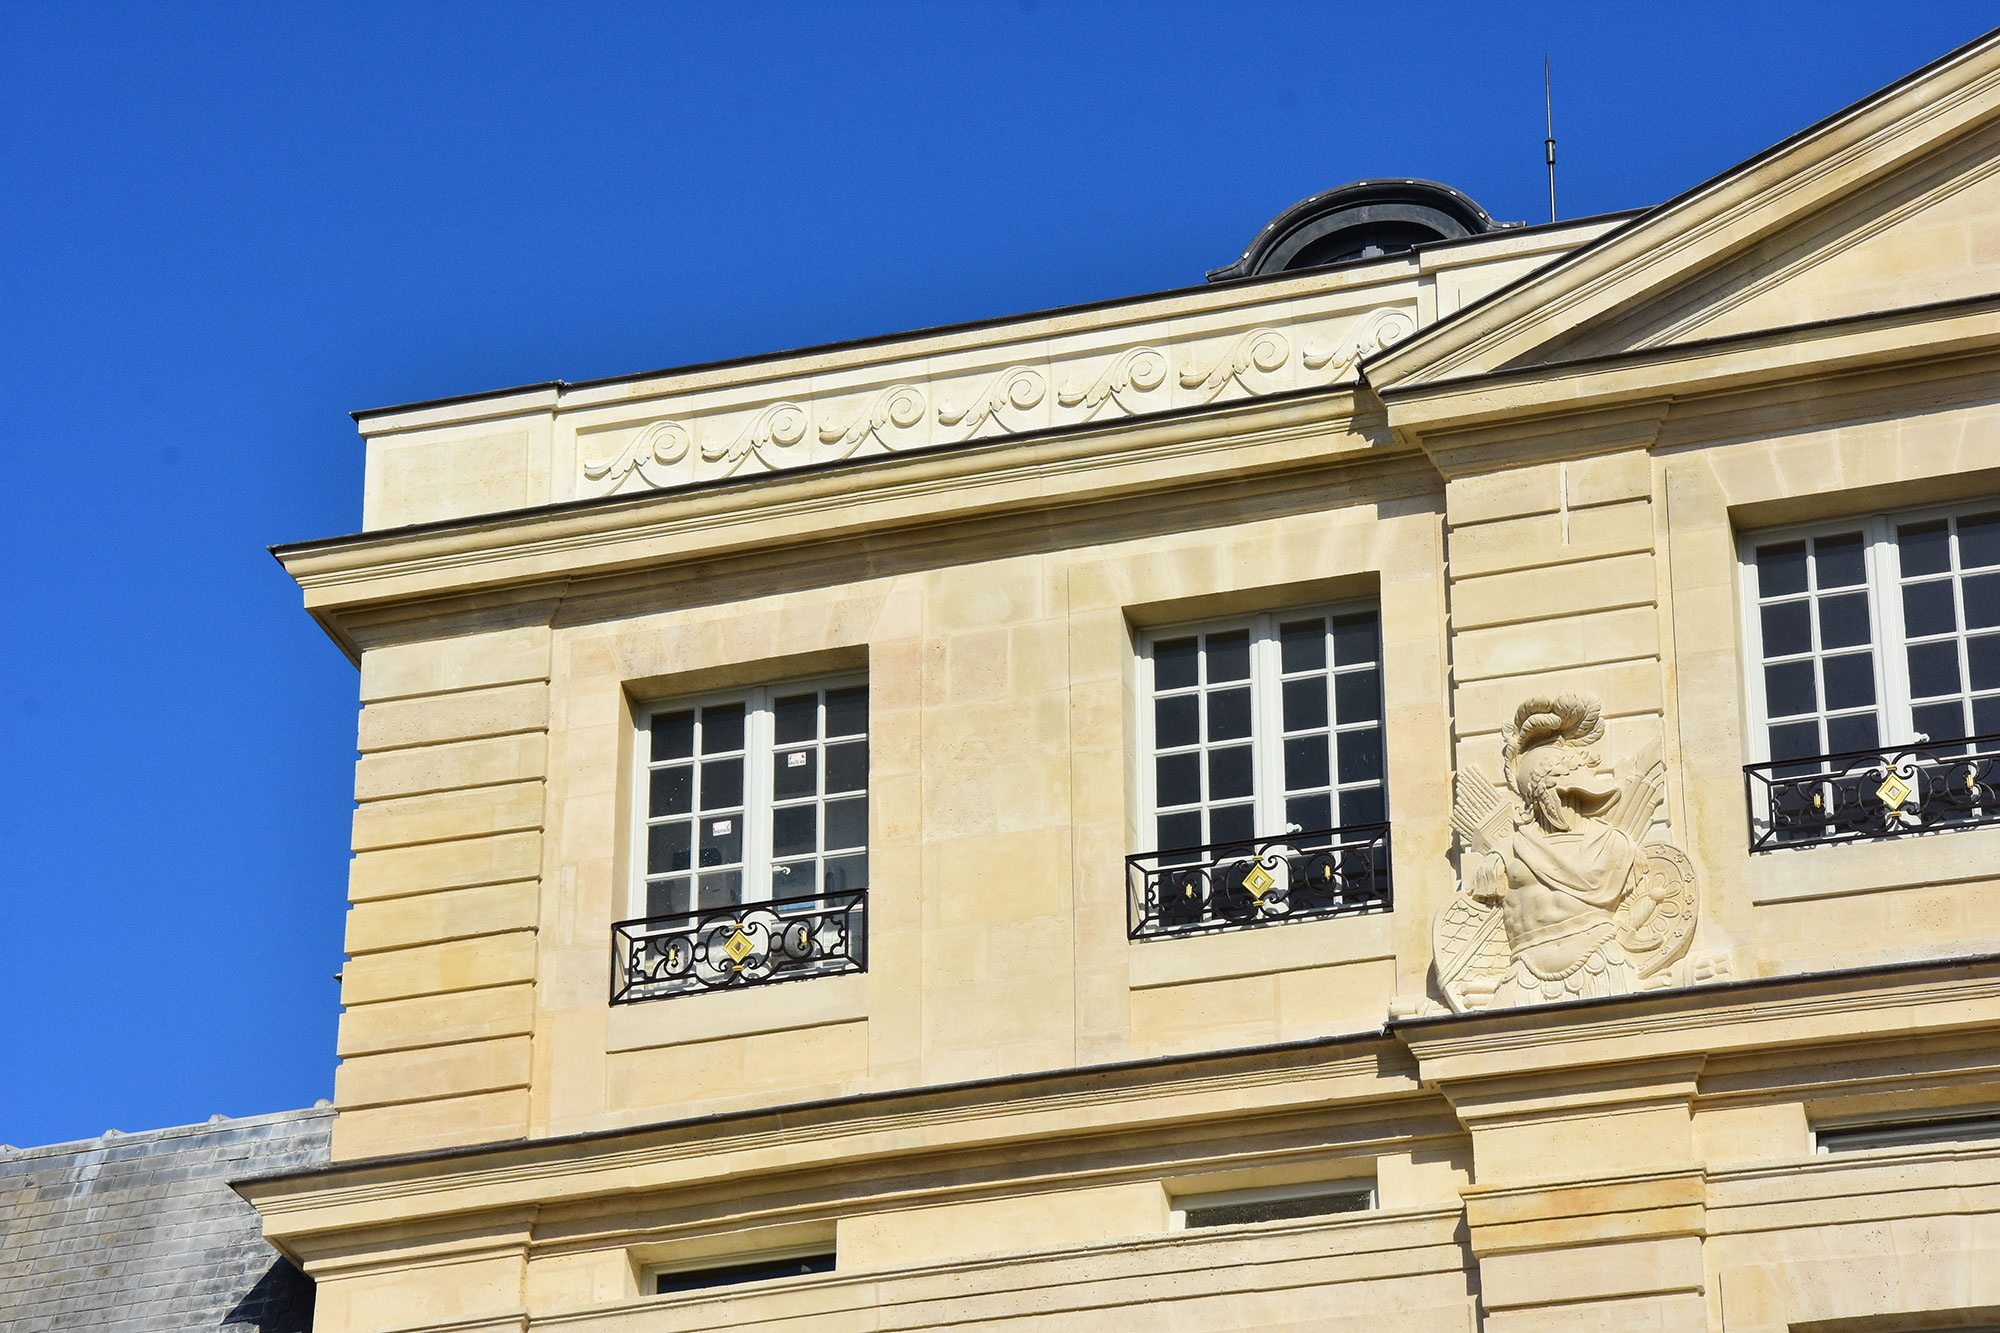 Archives Nationales - Paris restauration façades